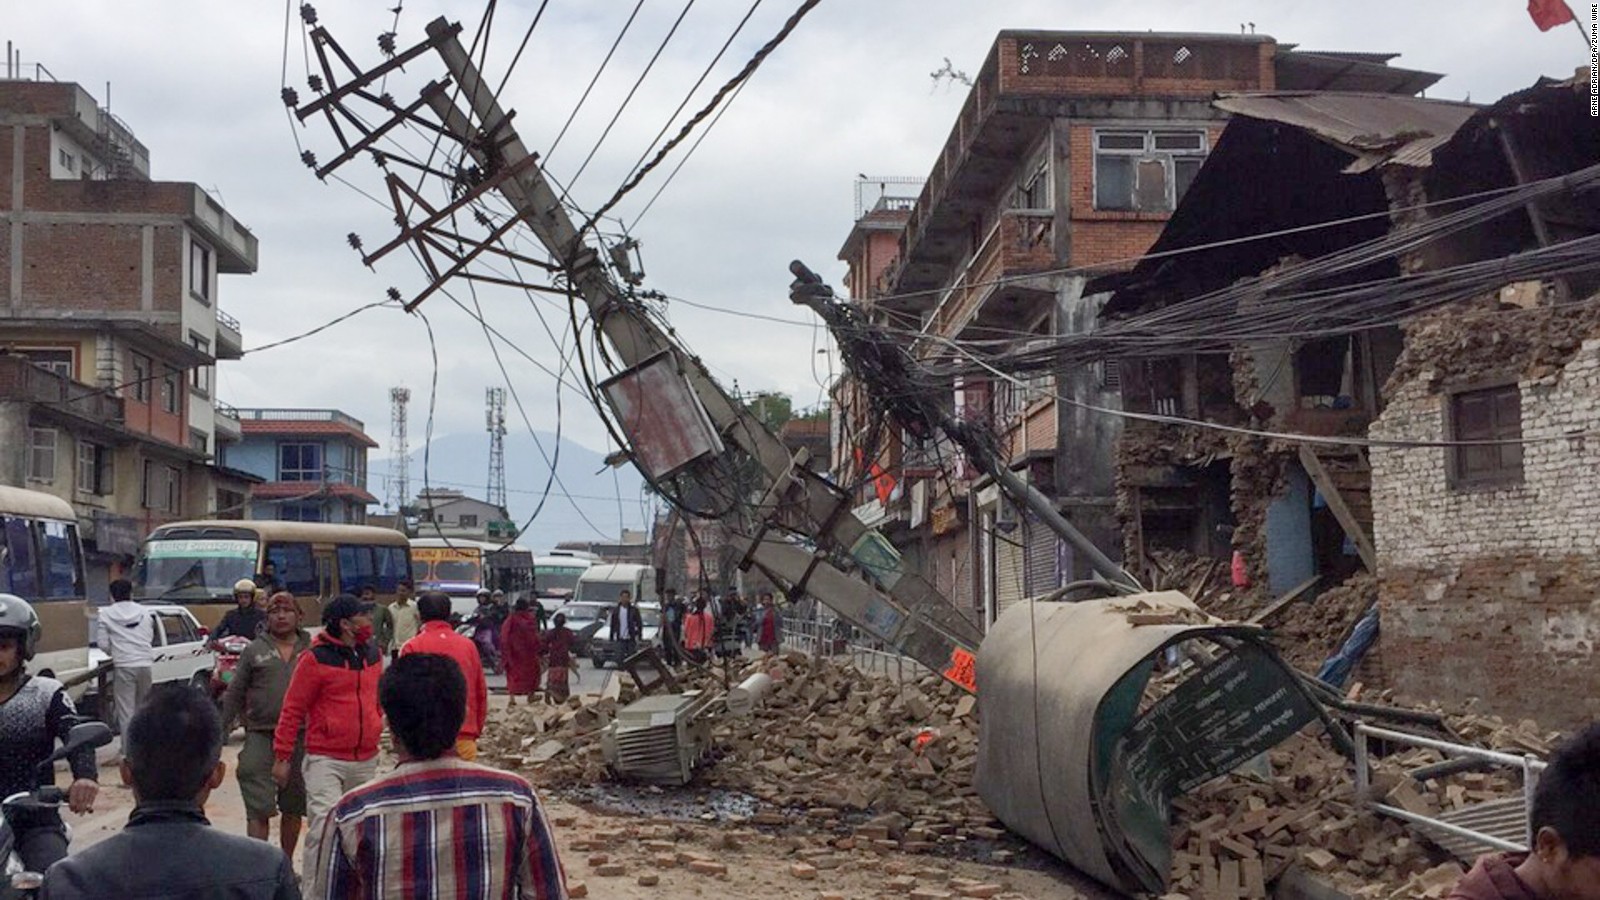 Tragic Aftermath Of Nepals Catastrophic Quake Cnn